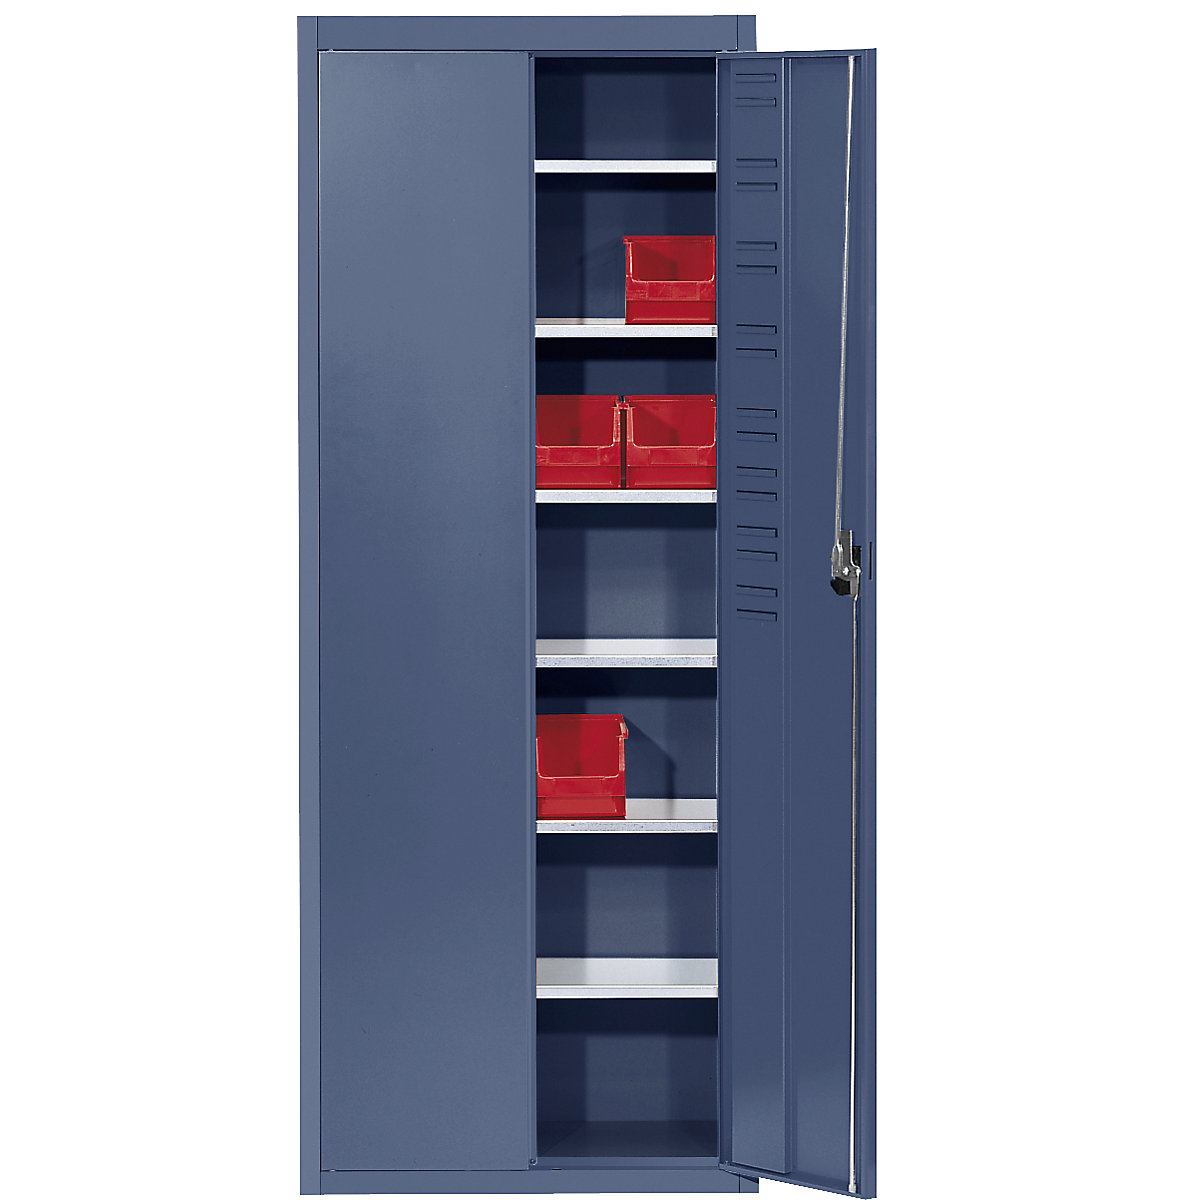 Rekesztároló szekrény, nyitott tárolódobozok nélkül – mauser, ma x szé x mé 1740 x 680 x 280 mm, egyszínű, ragyogó kék, 3 db-tól-9